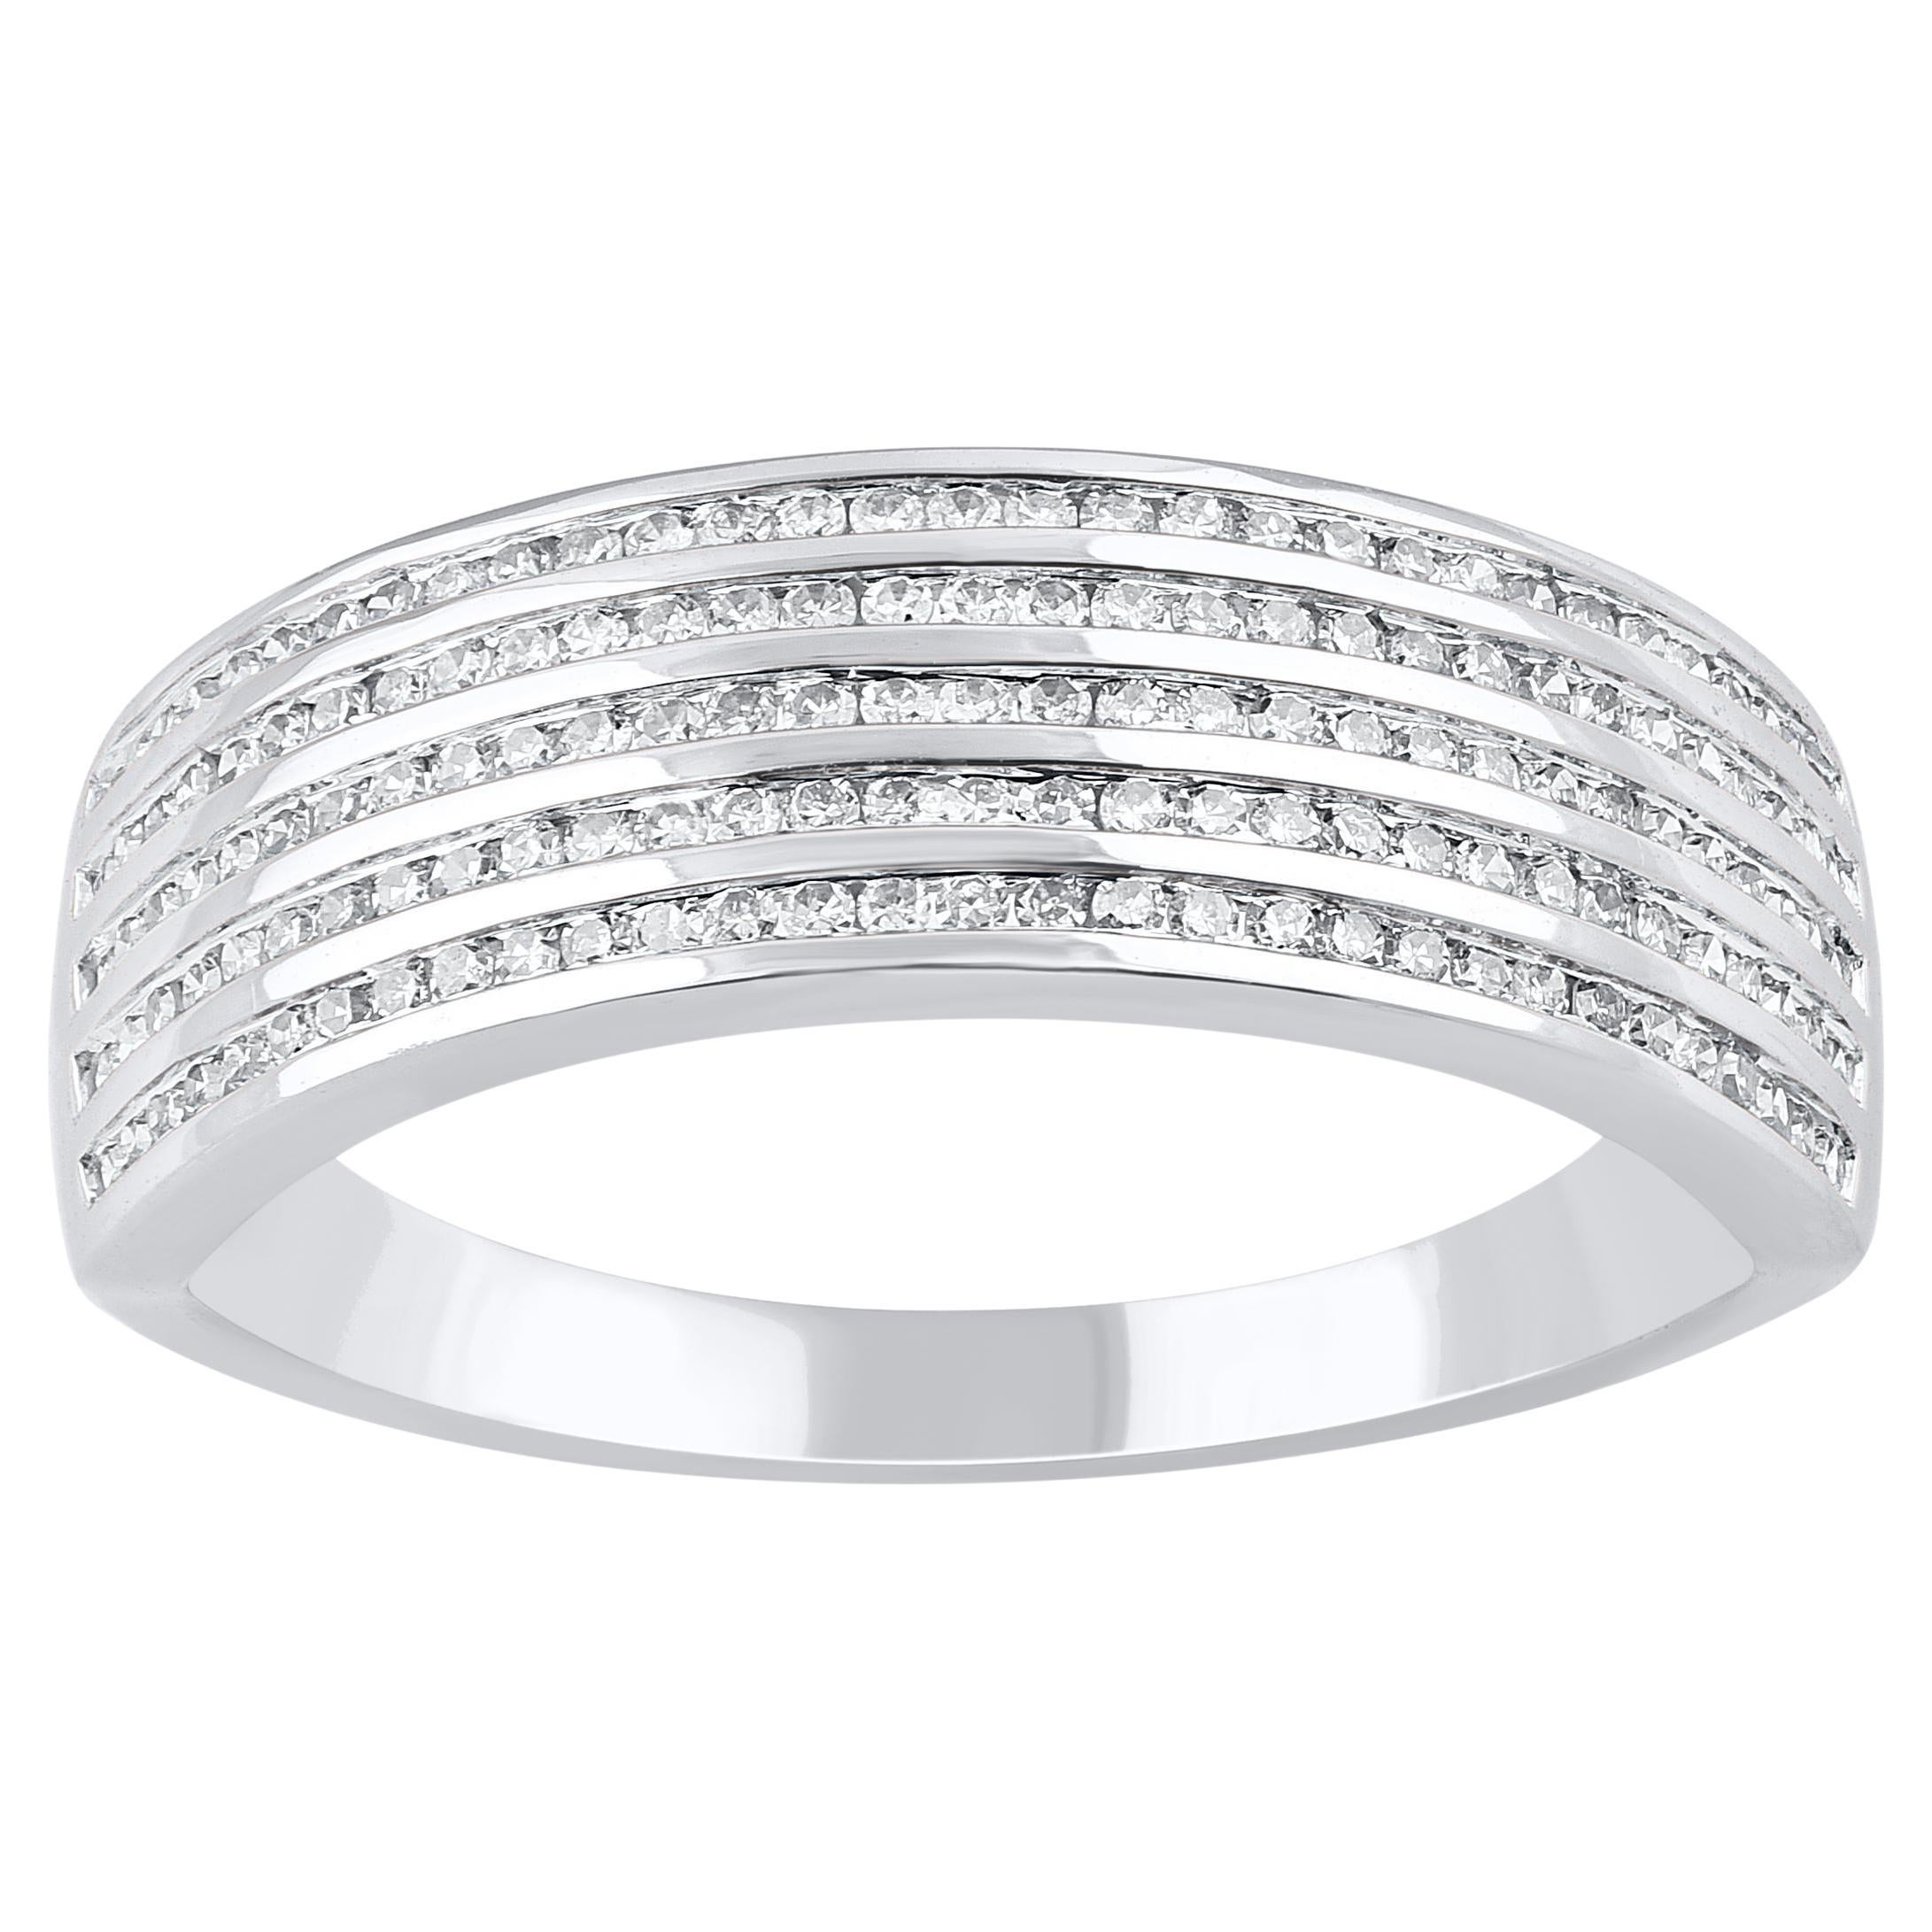 TJD 0.50 Carat Natural Diamond Multi-Row Band Ring in 14 Karat White Gold